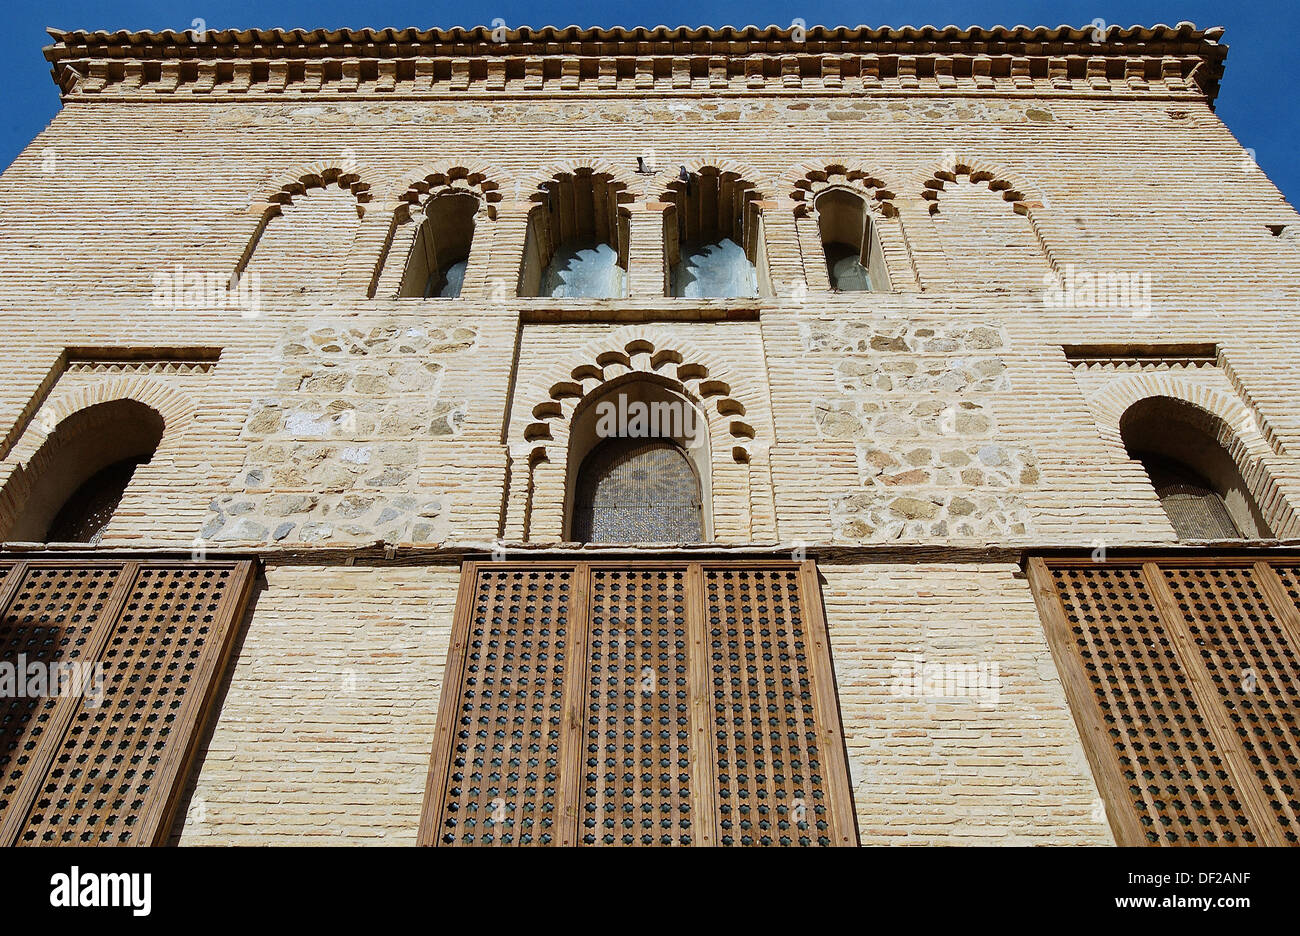 El Tránsito synagogue, Museo Sefardí (mudejar style built 14th century). Toledo. Spain Stock Photo